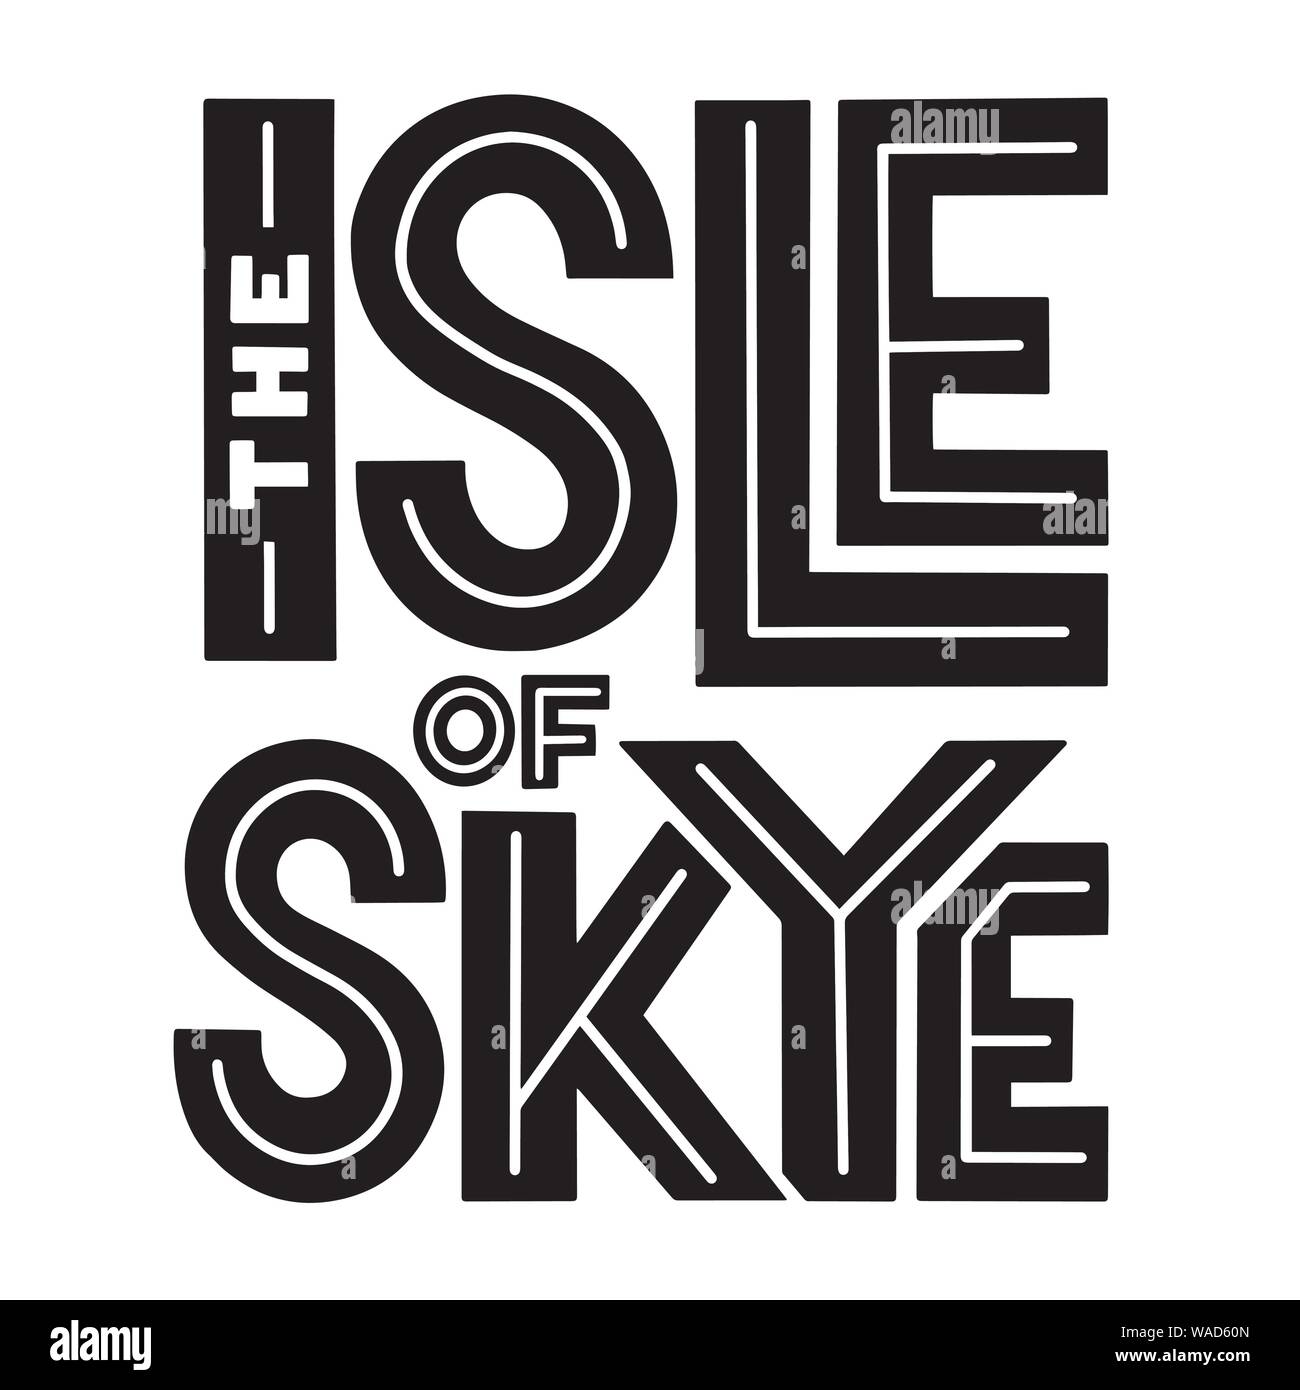 L'île de Sky sans serif composition lettrage pour carte postale, affiche, invitation ou logo. Vector black minimaliste et autocollant blanc. Illustration de Vecteur